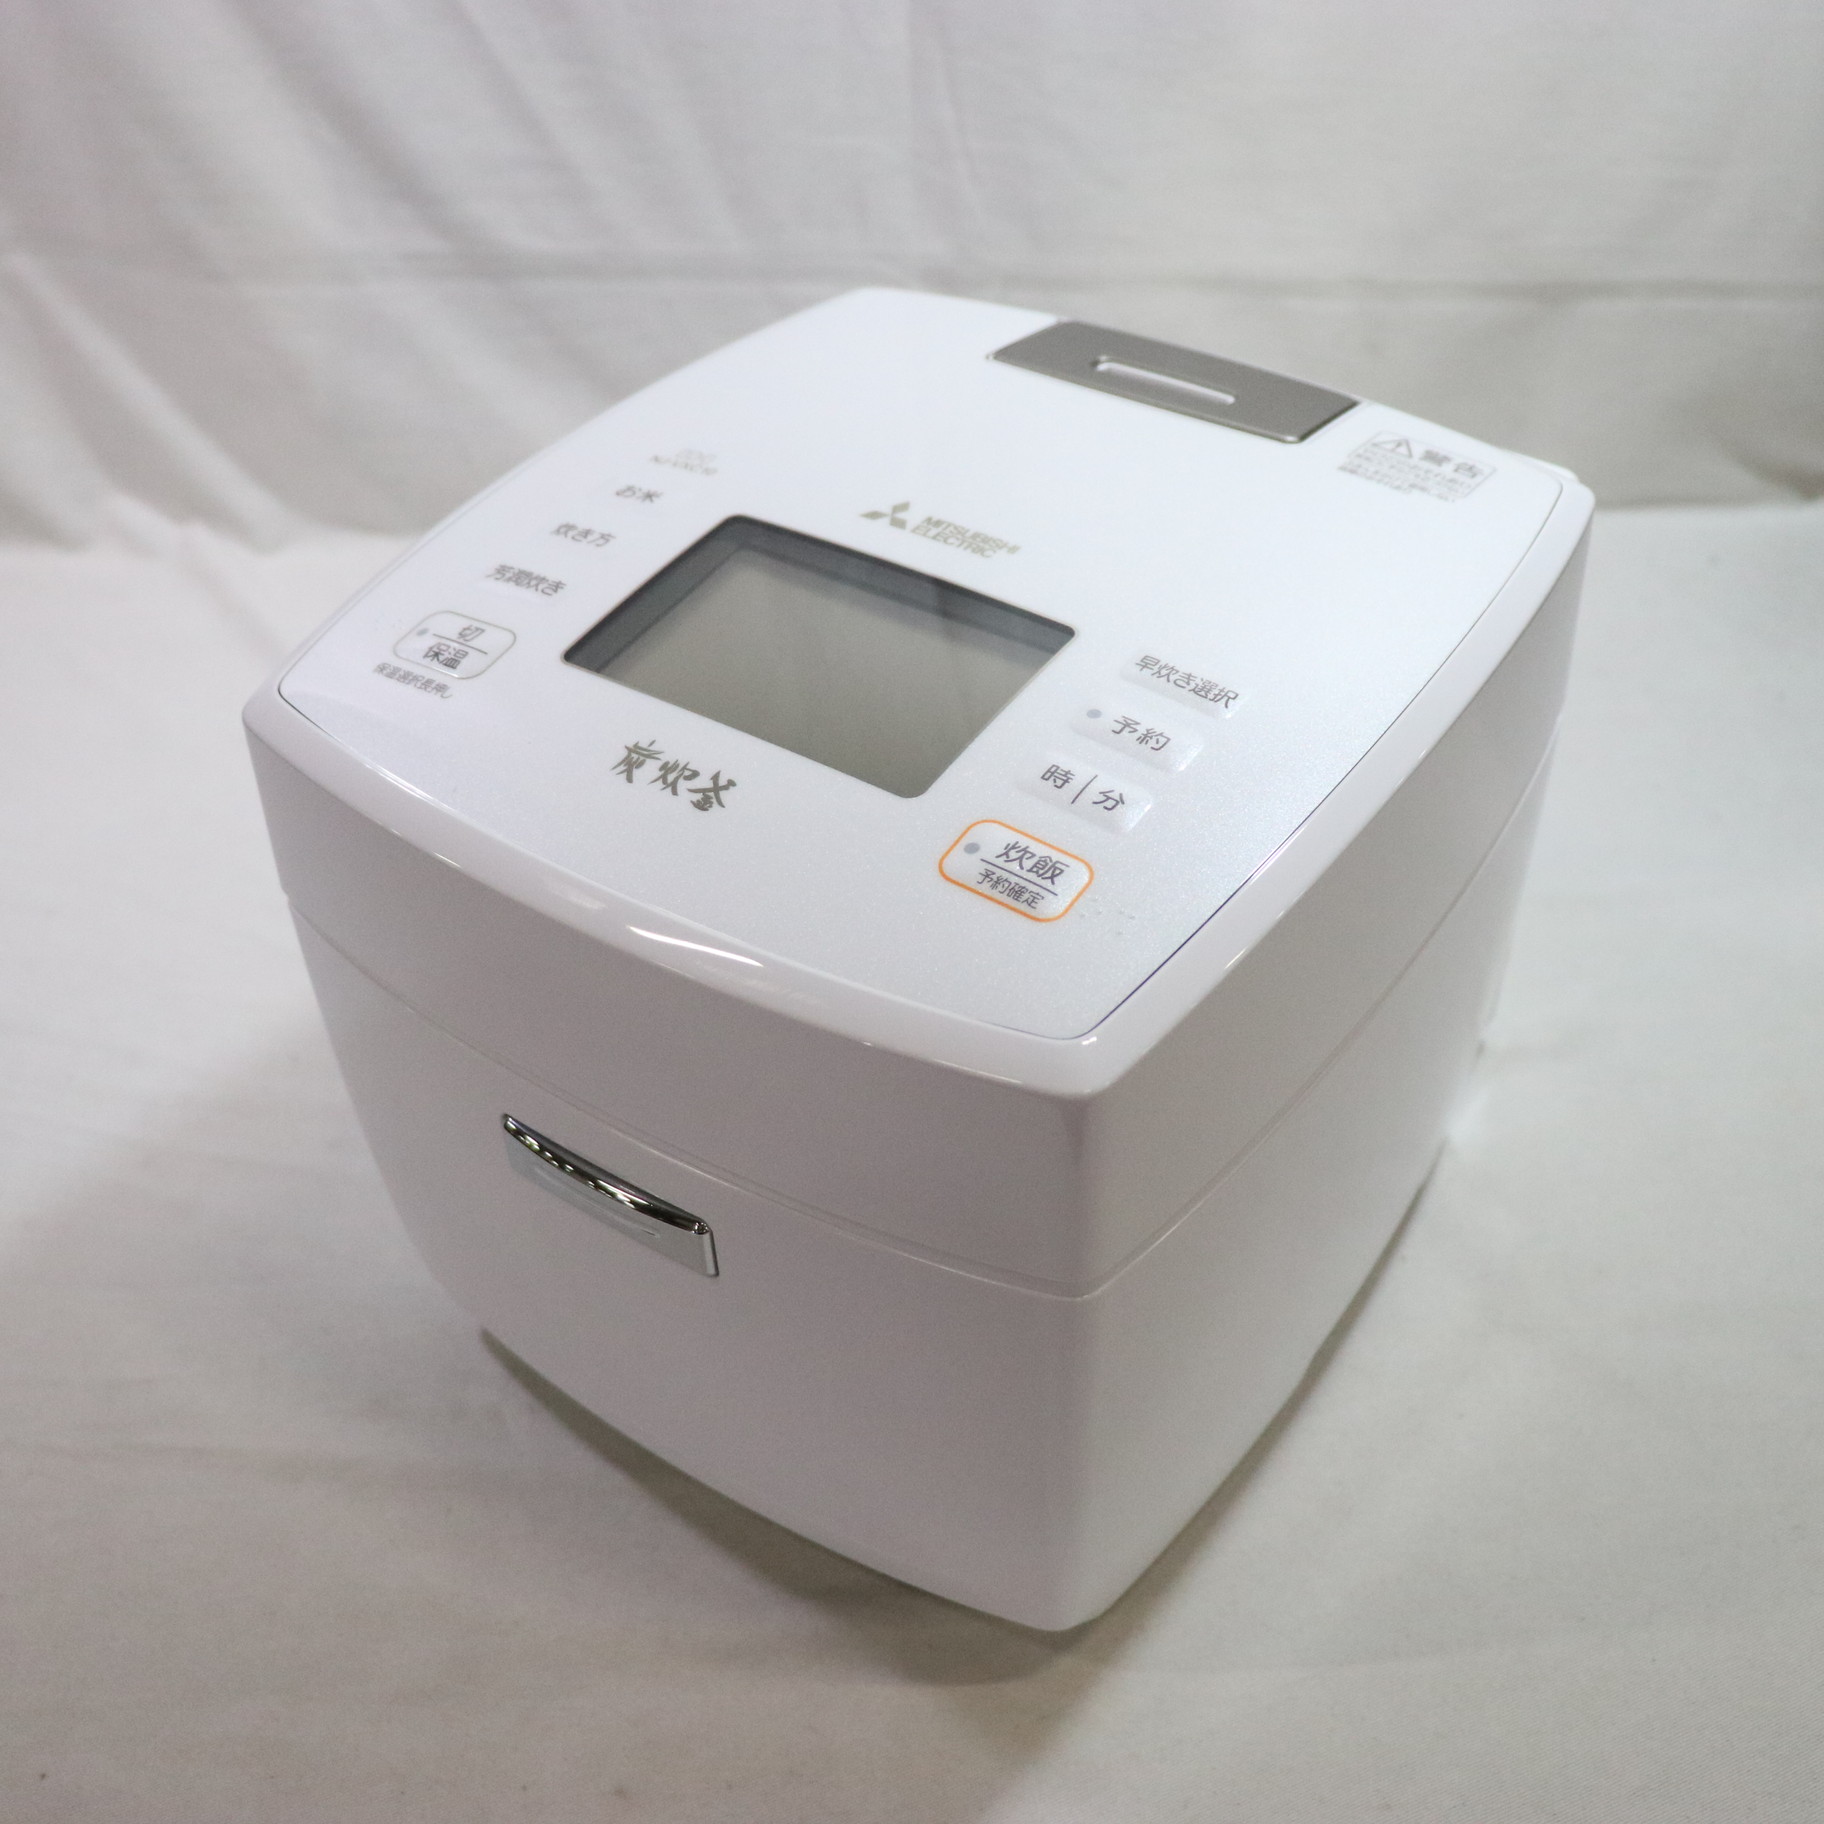 NJ-VXC10-W 三菱電機 MITSUBISHI ELECTRIC [IHジャー炊飯器 5.5合炊き